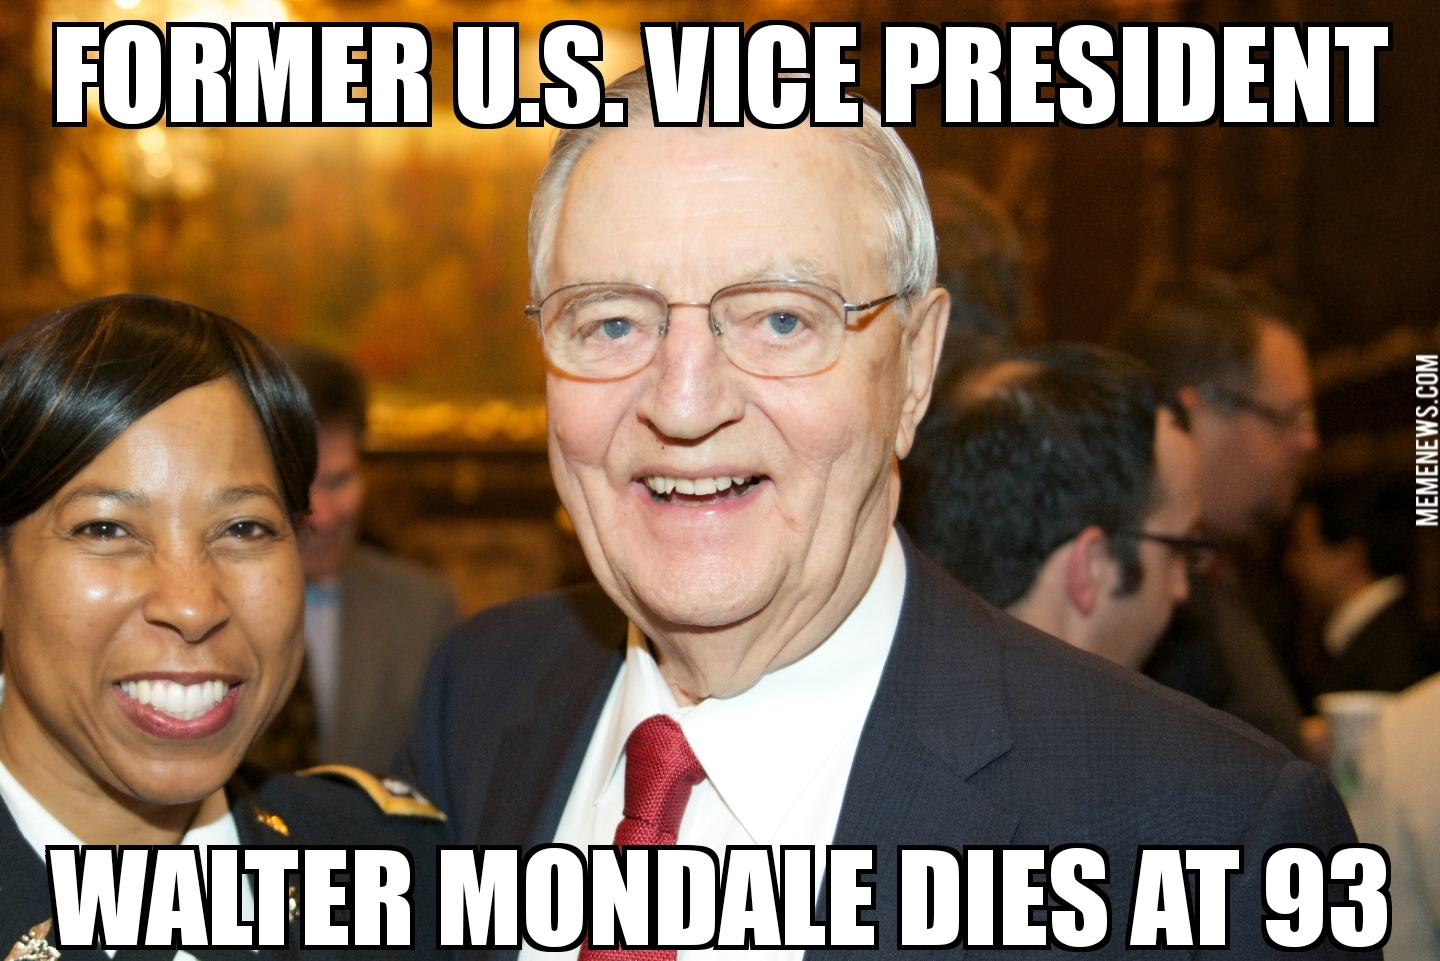 Walter Mondale dies